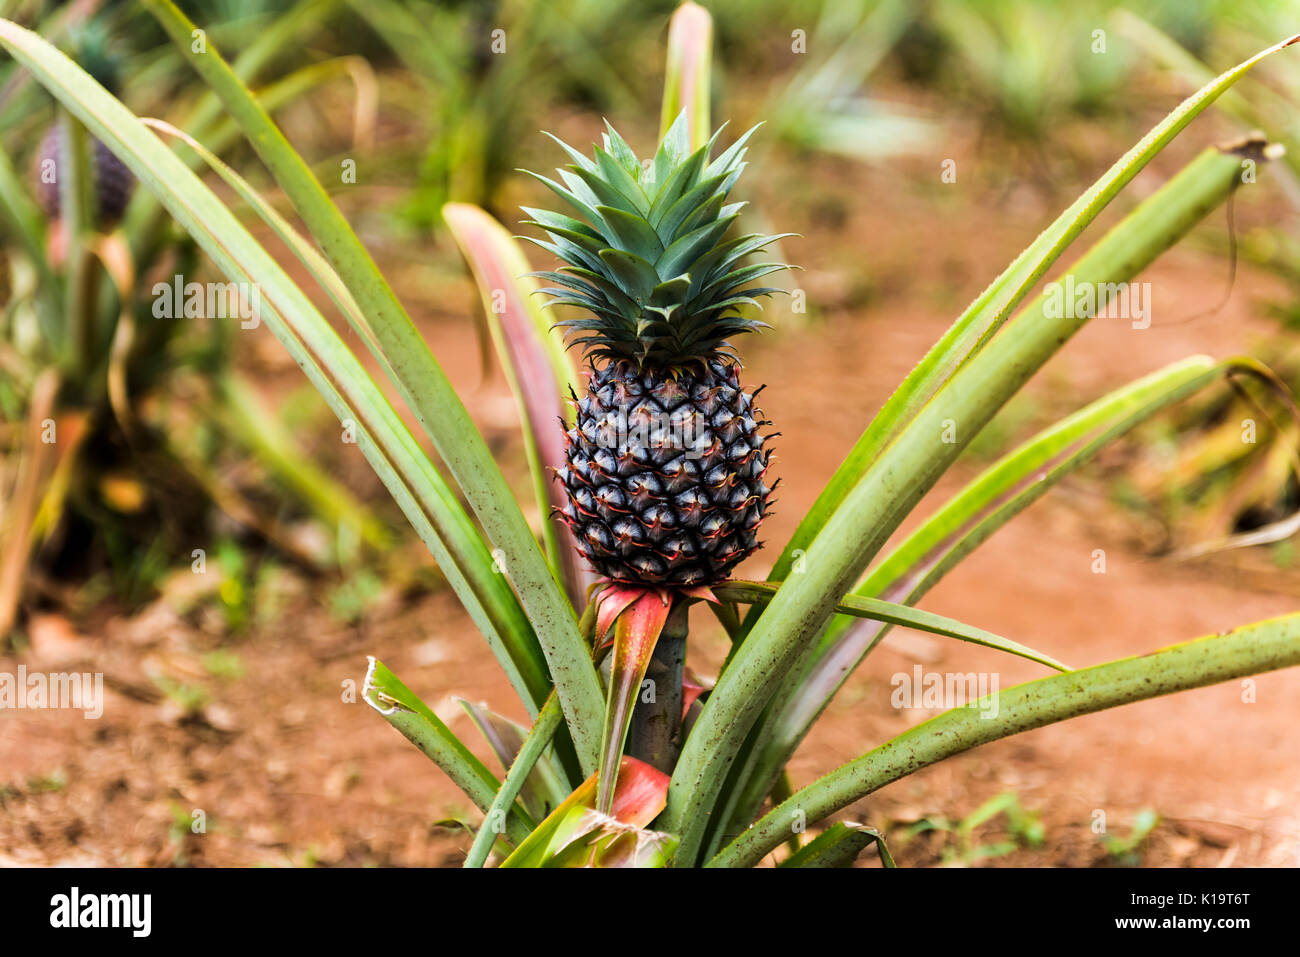 Ananaspflanze und Obstbau in Sansibar. Sansibar ist eine Insel im Indischen Ozean vor der Küste von Tansania, Ostafrika Stockfoto